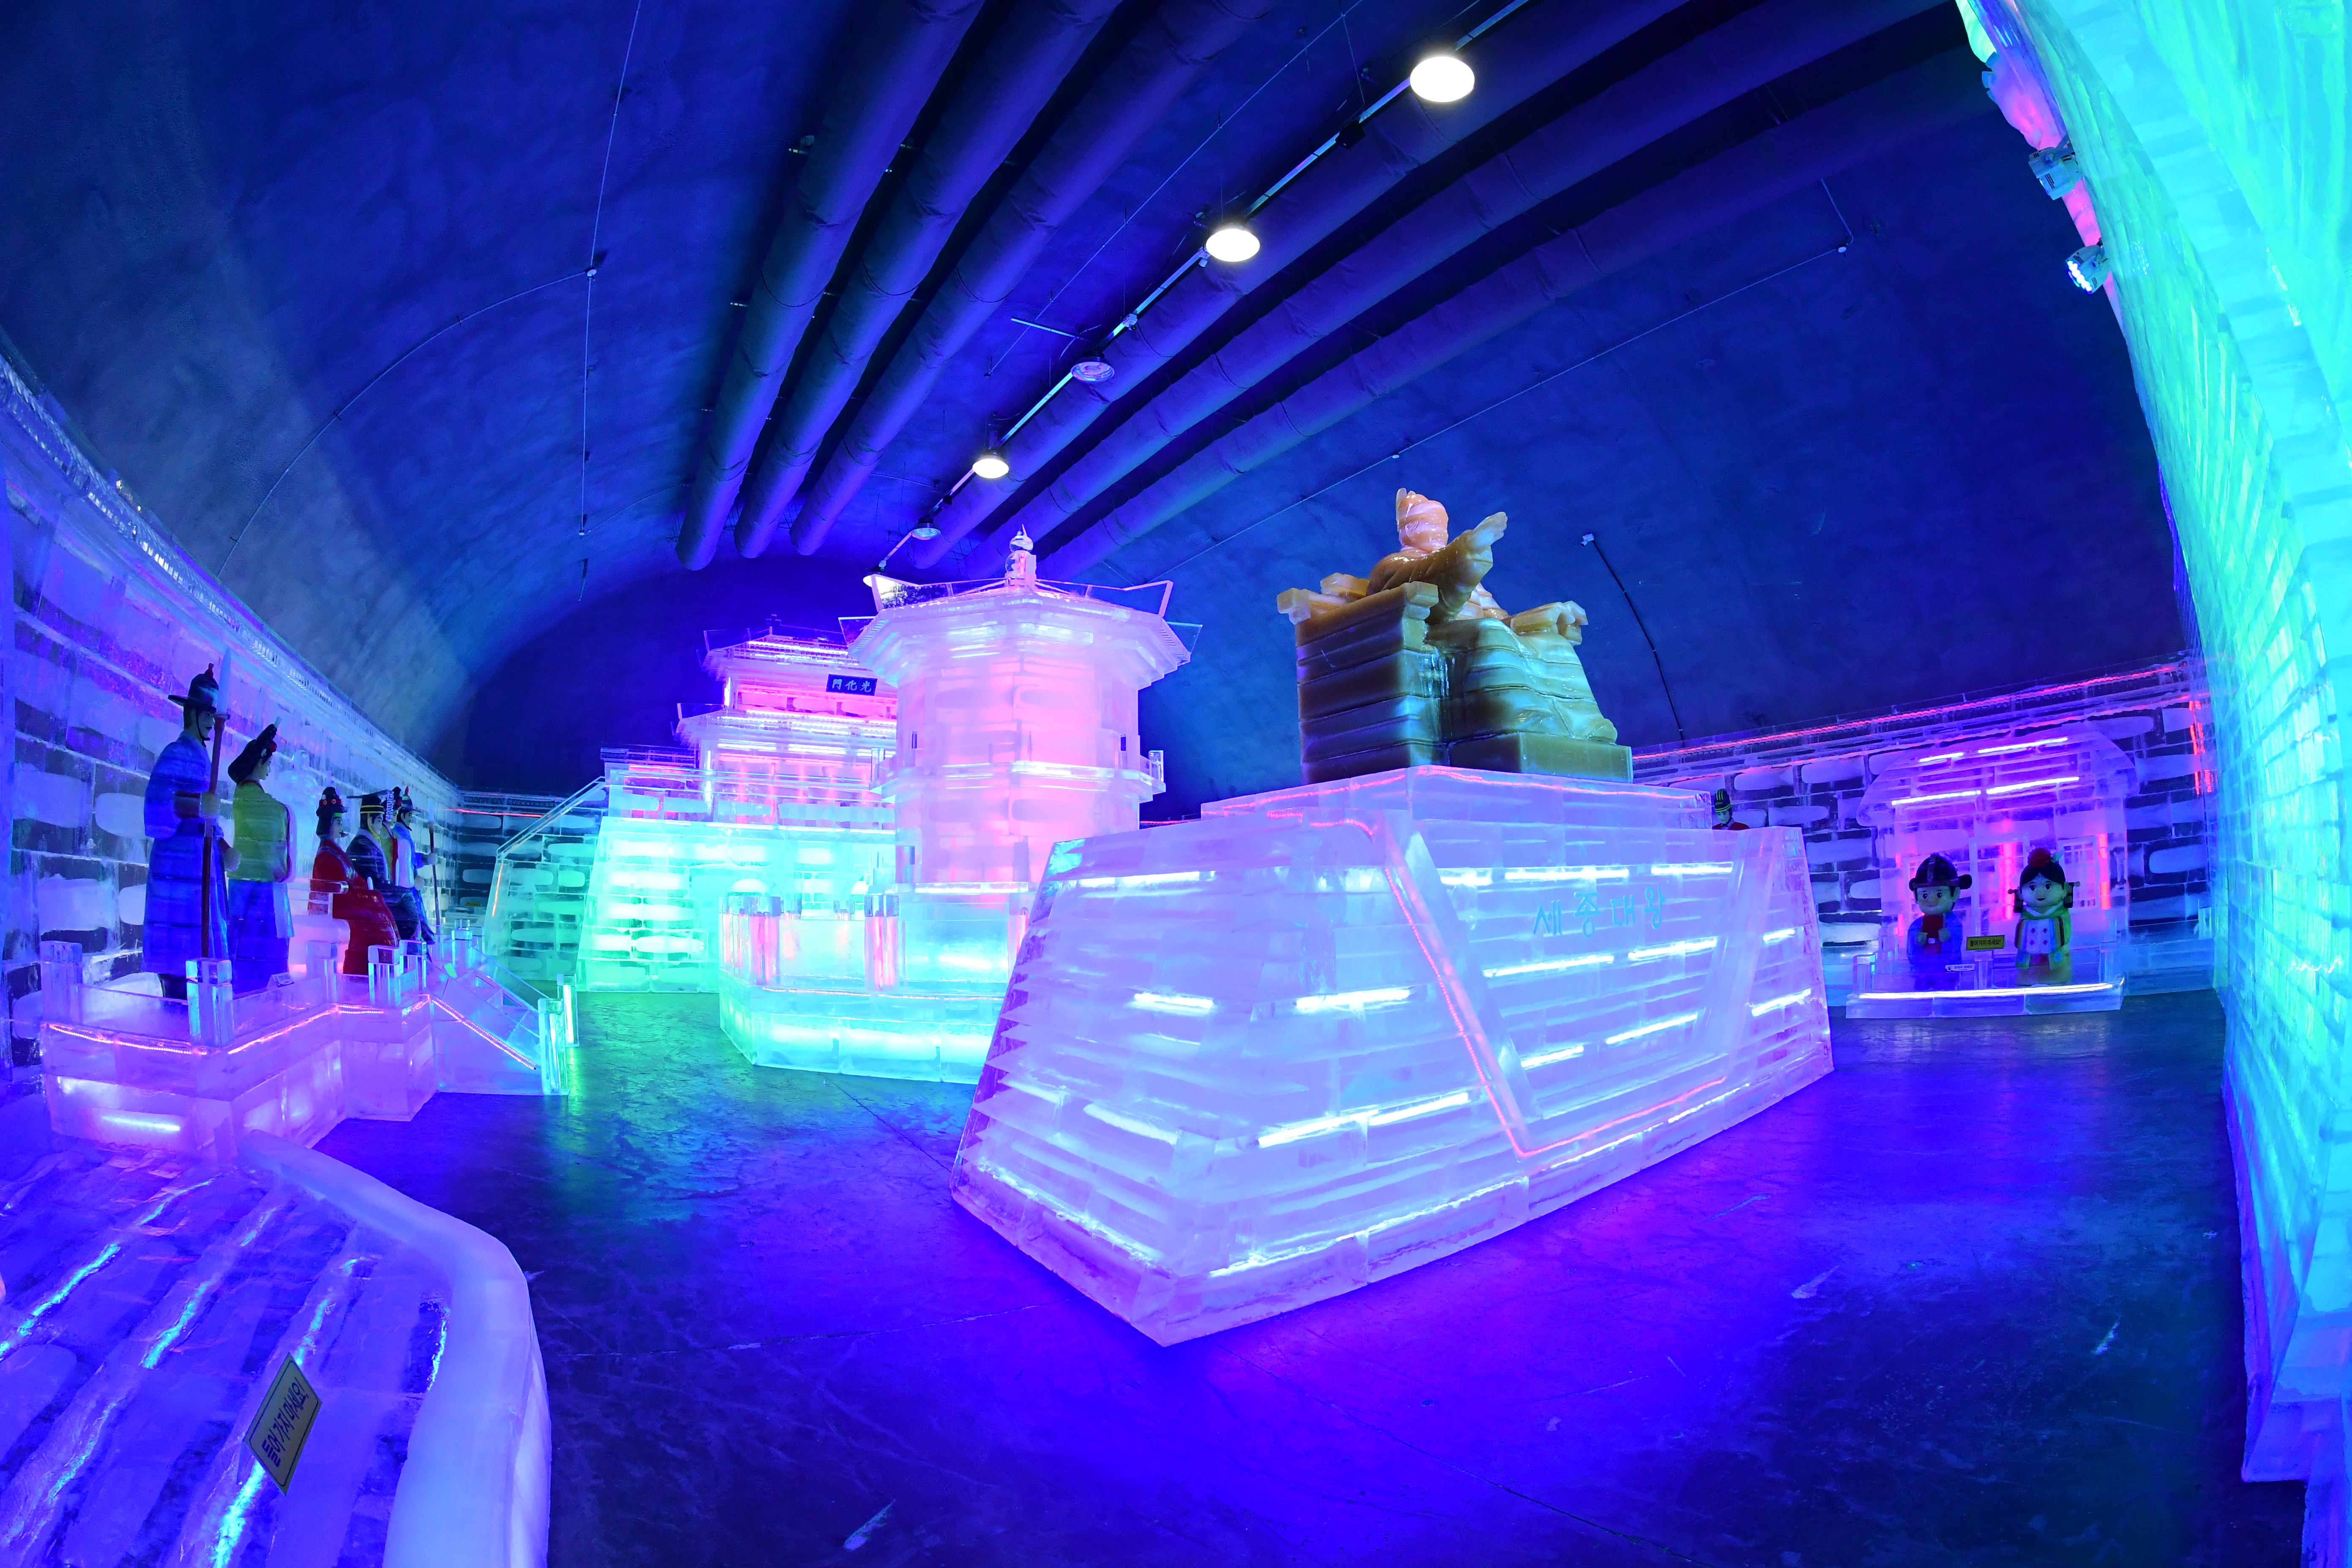 2023 세계최대 실내얼음조각광장 타빙식 의 사진